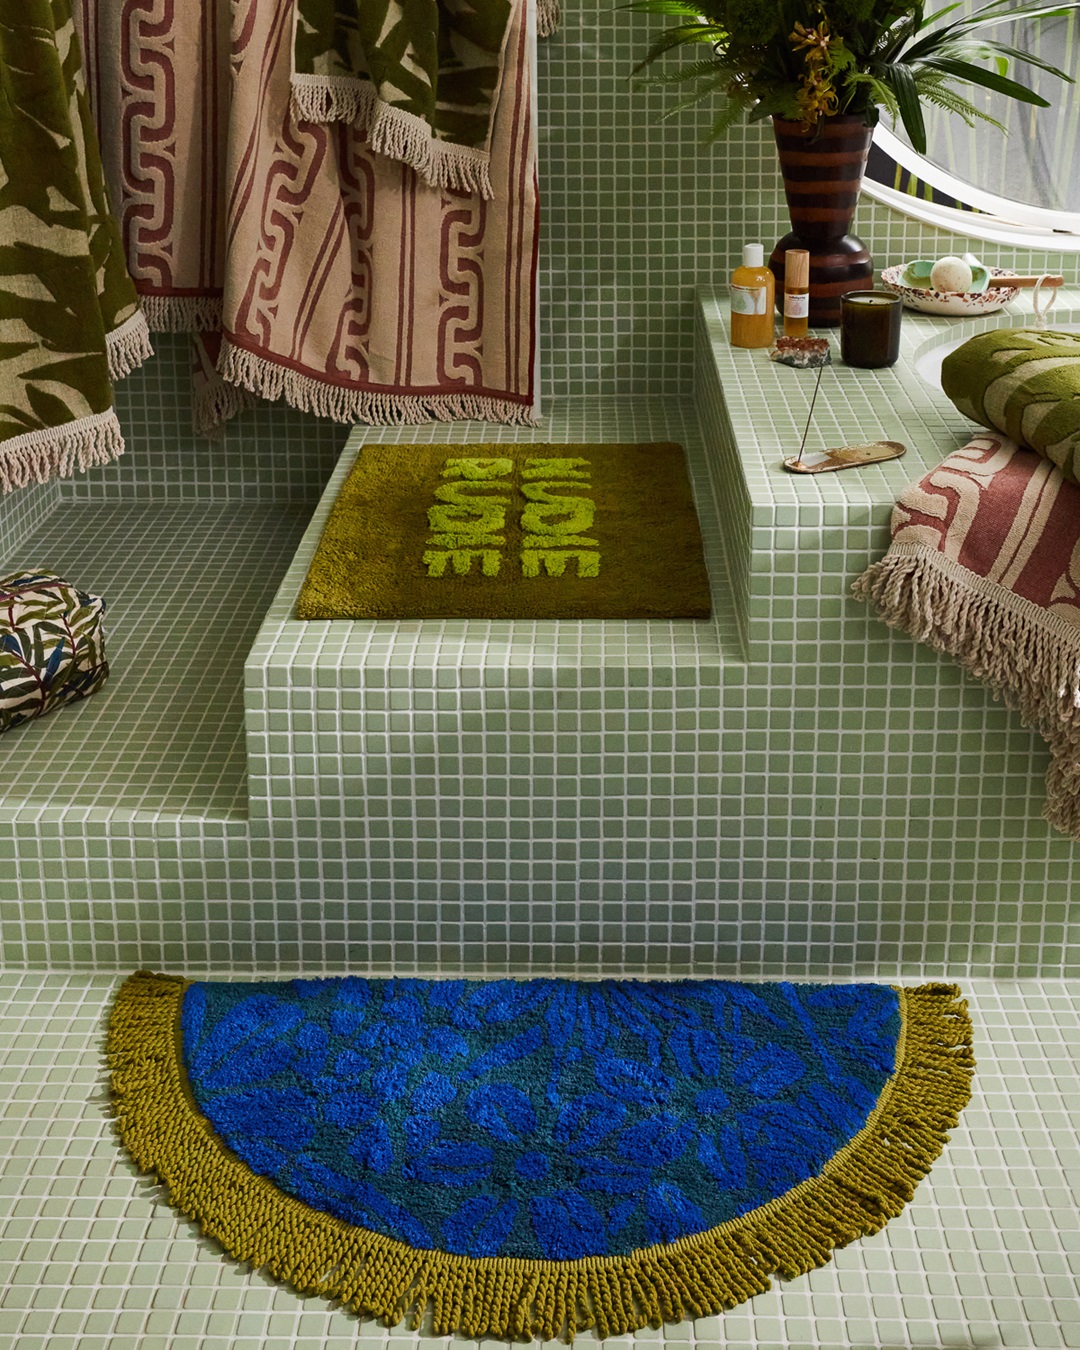 Blue and gold bath mat on tiled bathroom floor